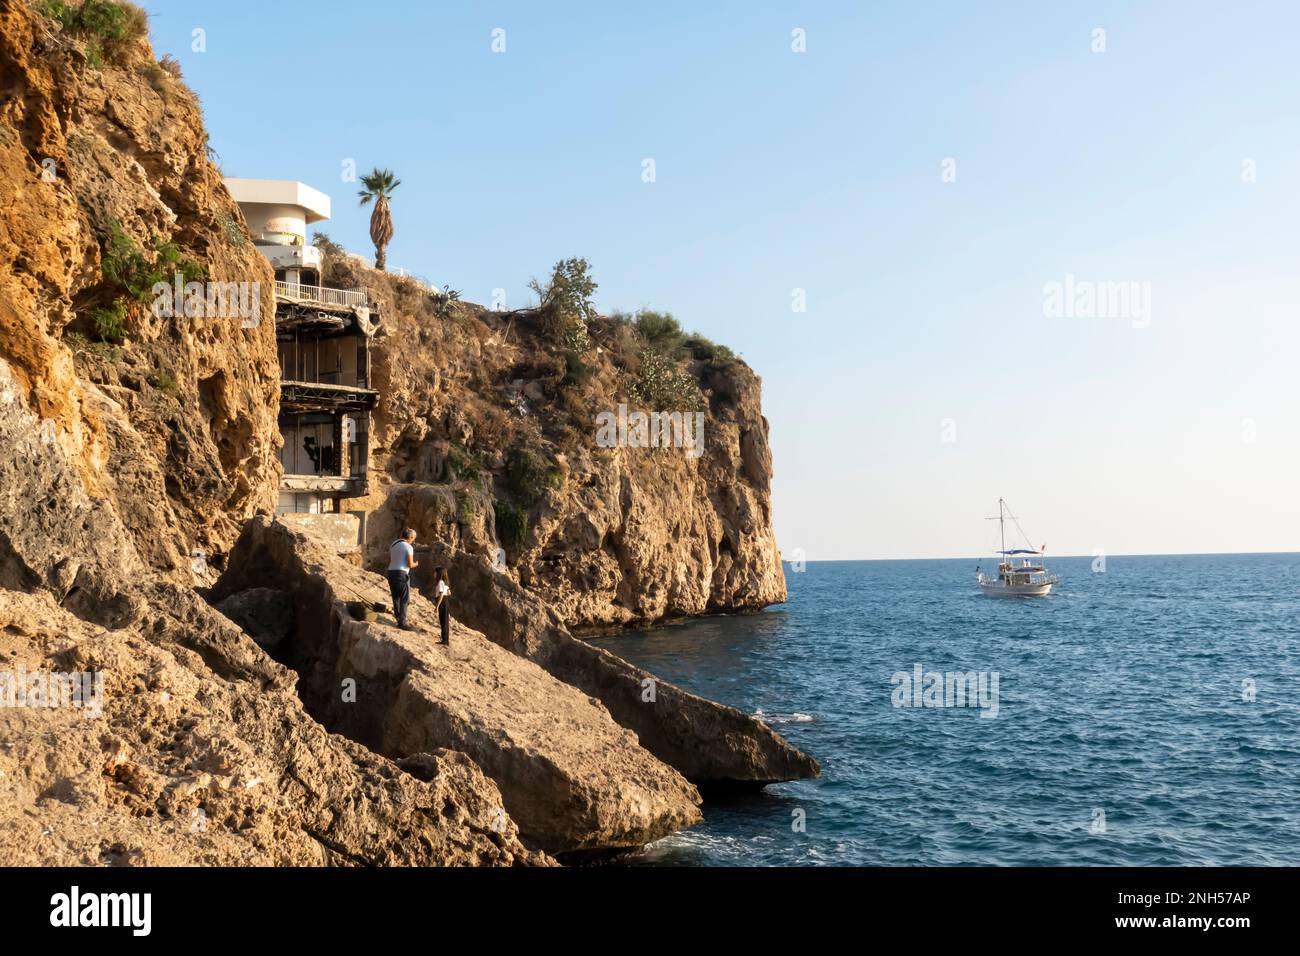 Logement et constructions d'Antalya. Maison en construction construite dans la falaise sur la rive de la mer de la ville d'Antalya Turquie Banque D'Images